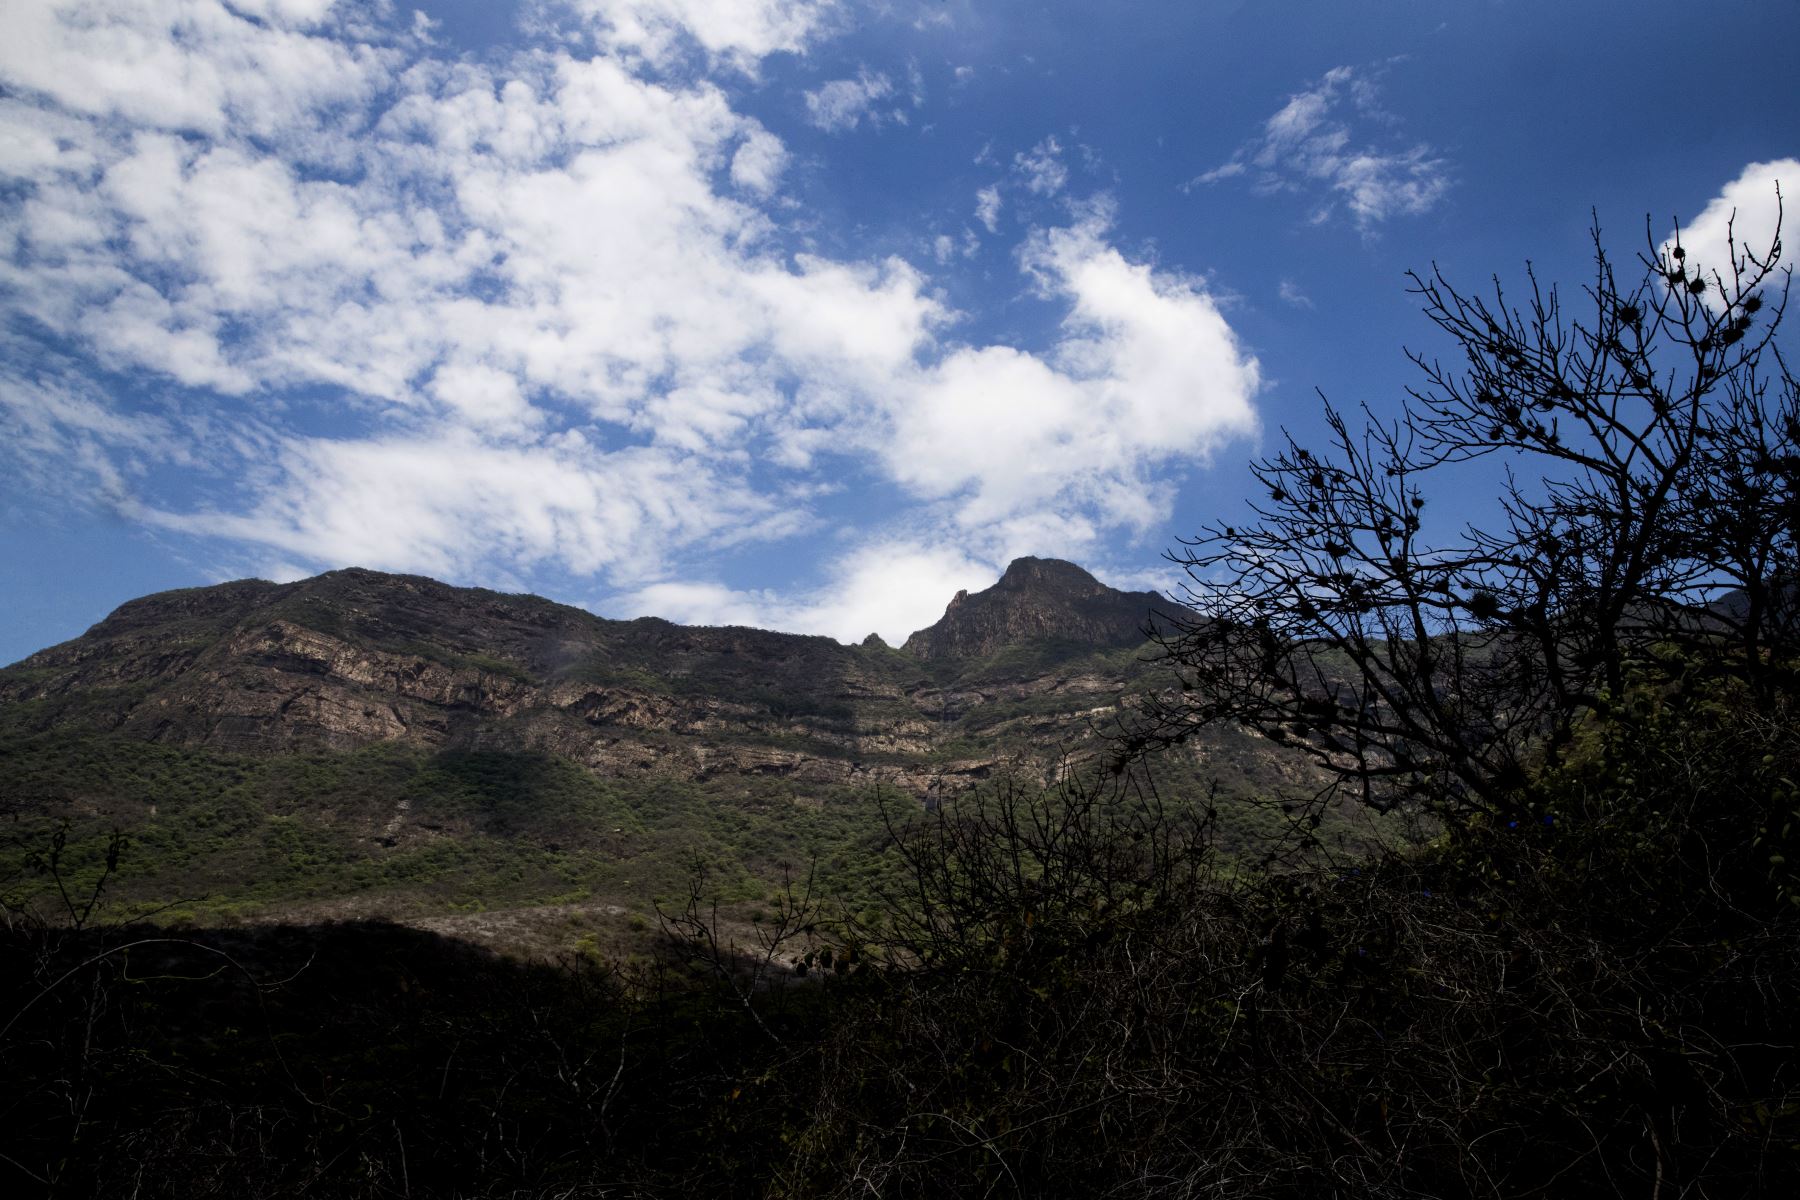 La reserva ecológica Chaparrí está conformada por 34,412 hectáreas y es la primera área de conservación privada creada en el Perú. Foto: ANDINA/Carlos Lezama.